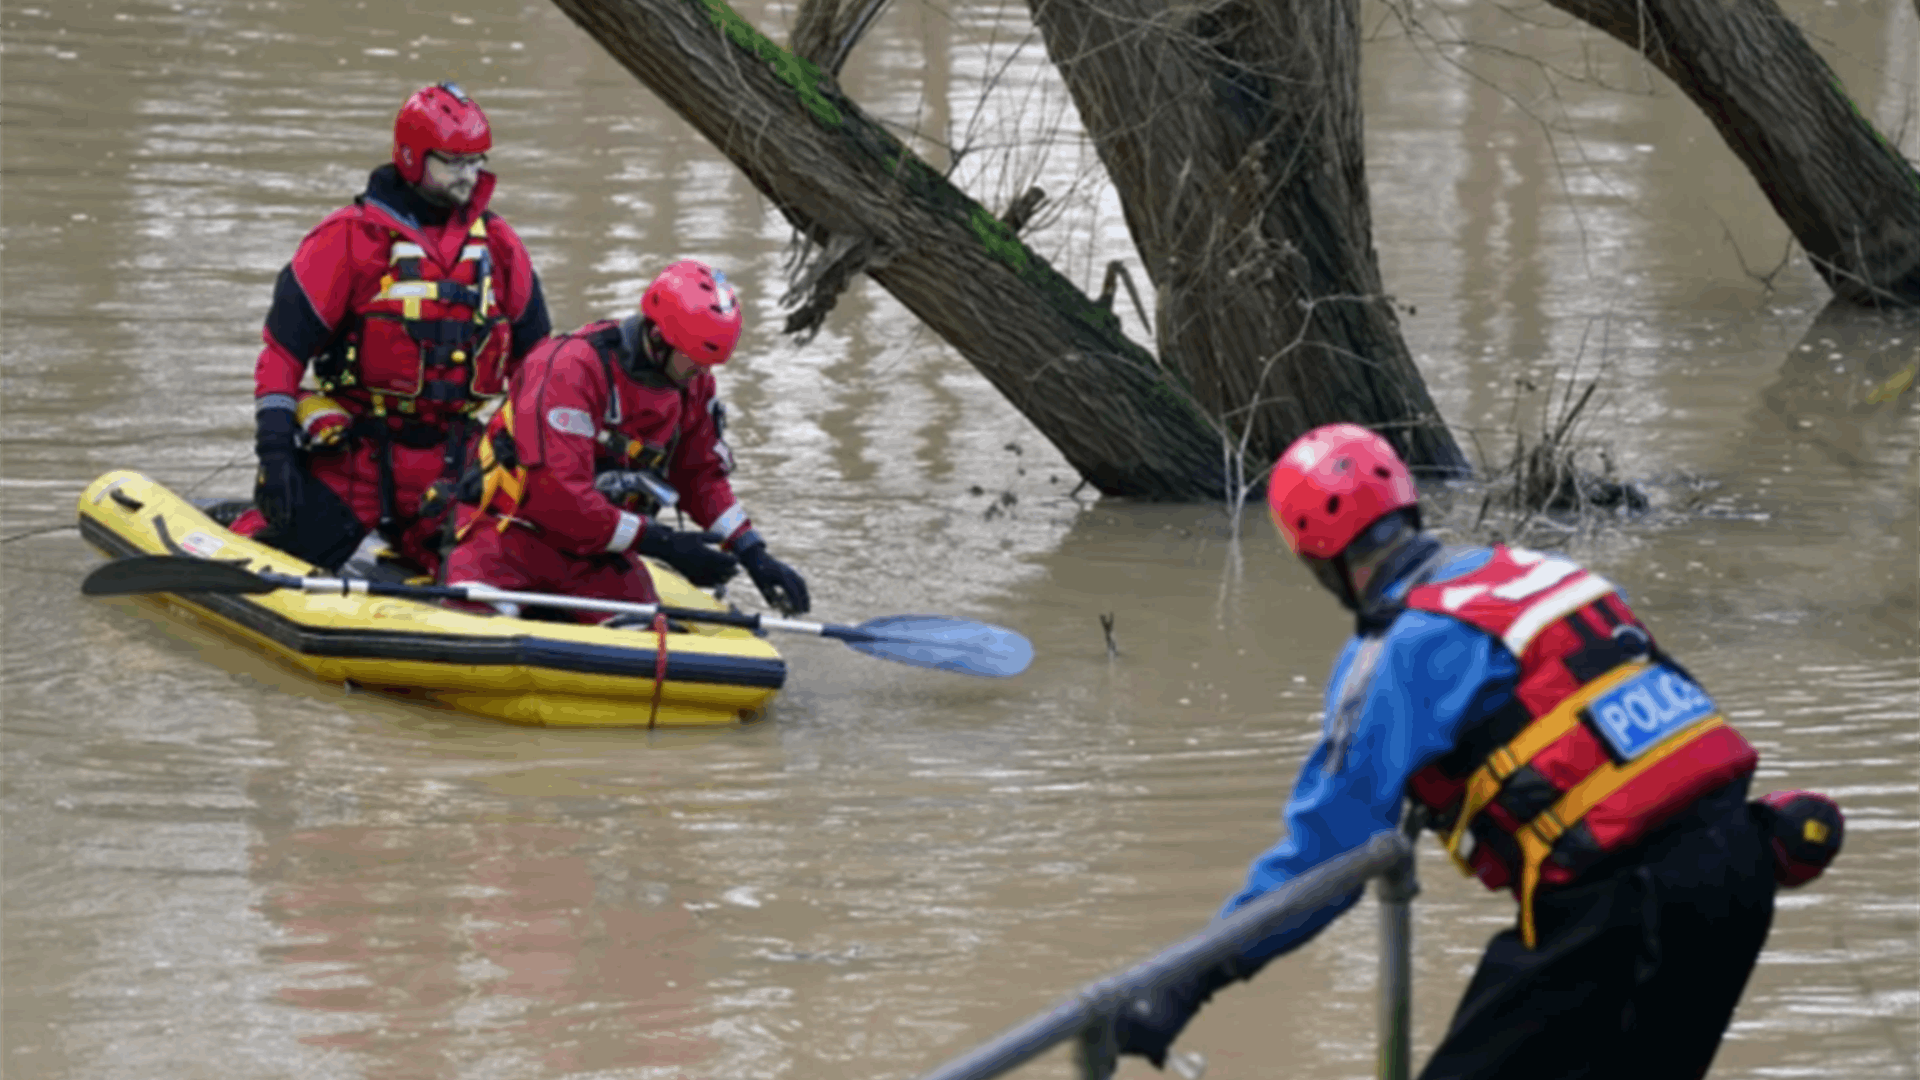 مشهد يفطر القلوب... طفل سقط في نهر خلال نزهة مع عائلته في بريطانيا: وهذا ما كشفته السلطات (فيديو)